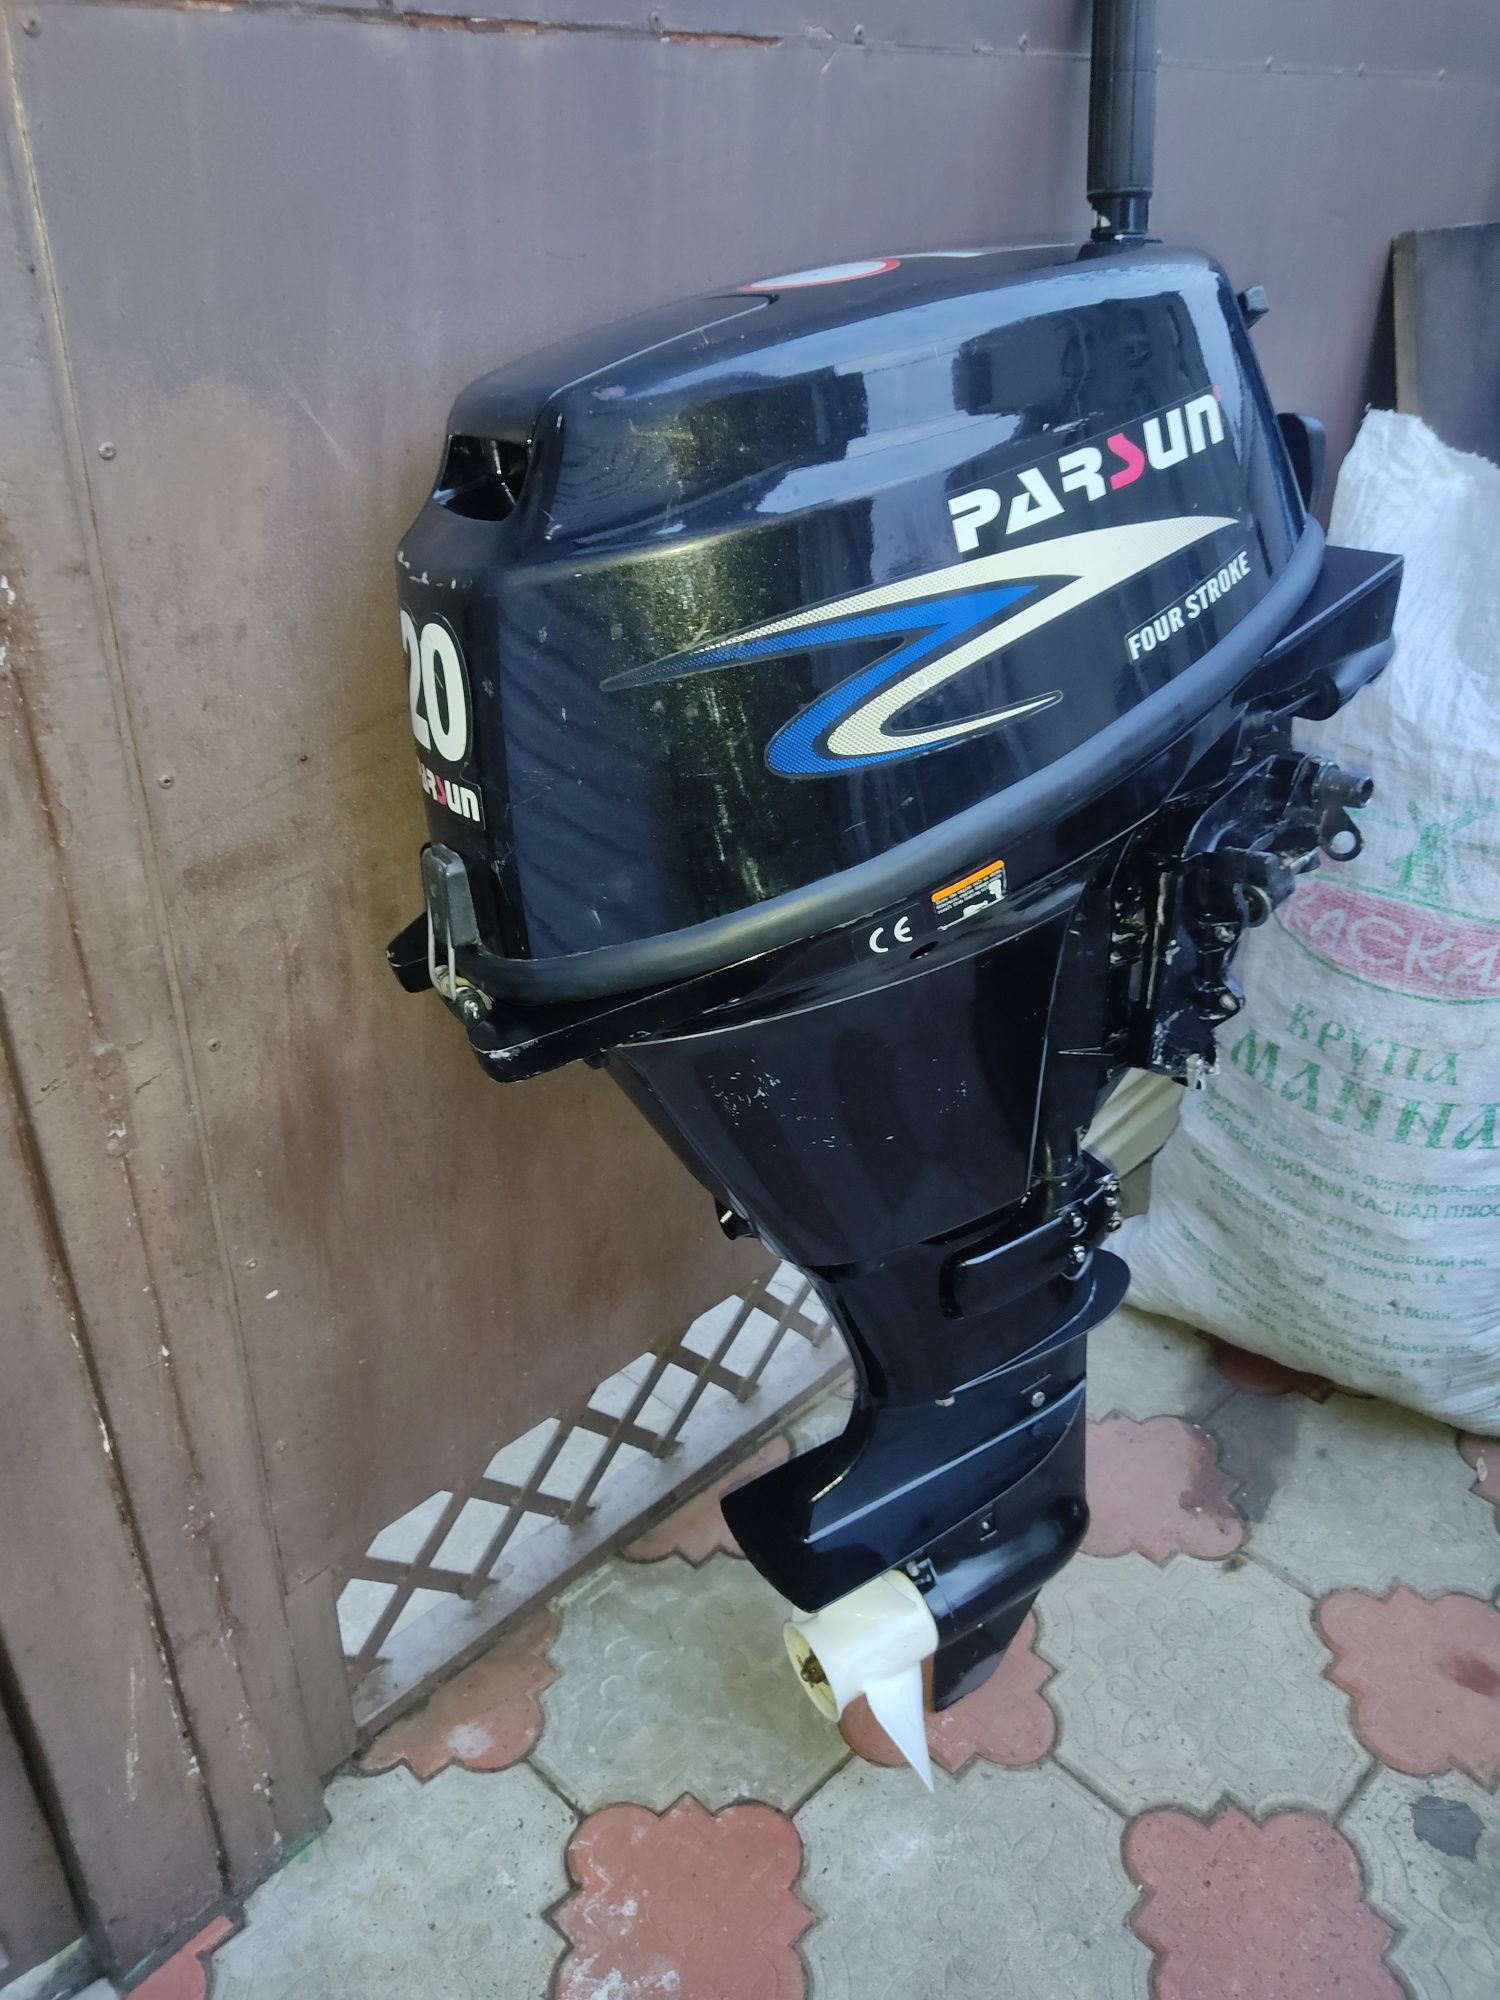 Лодочный мотор Parsun 20 он же Yamaha 20